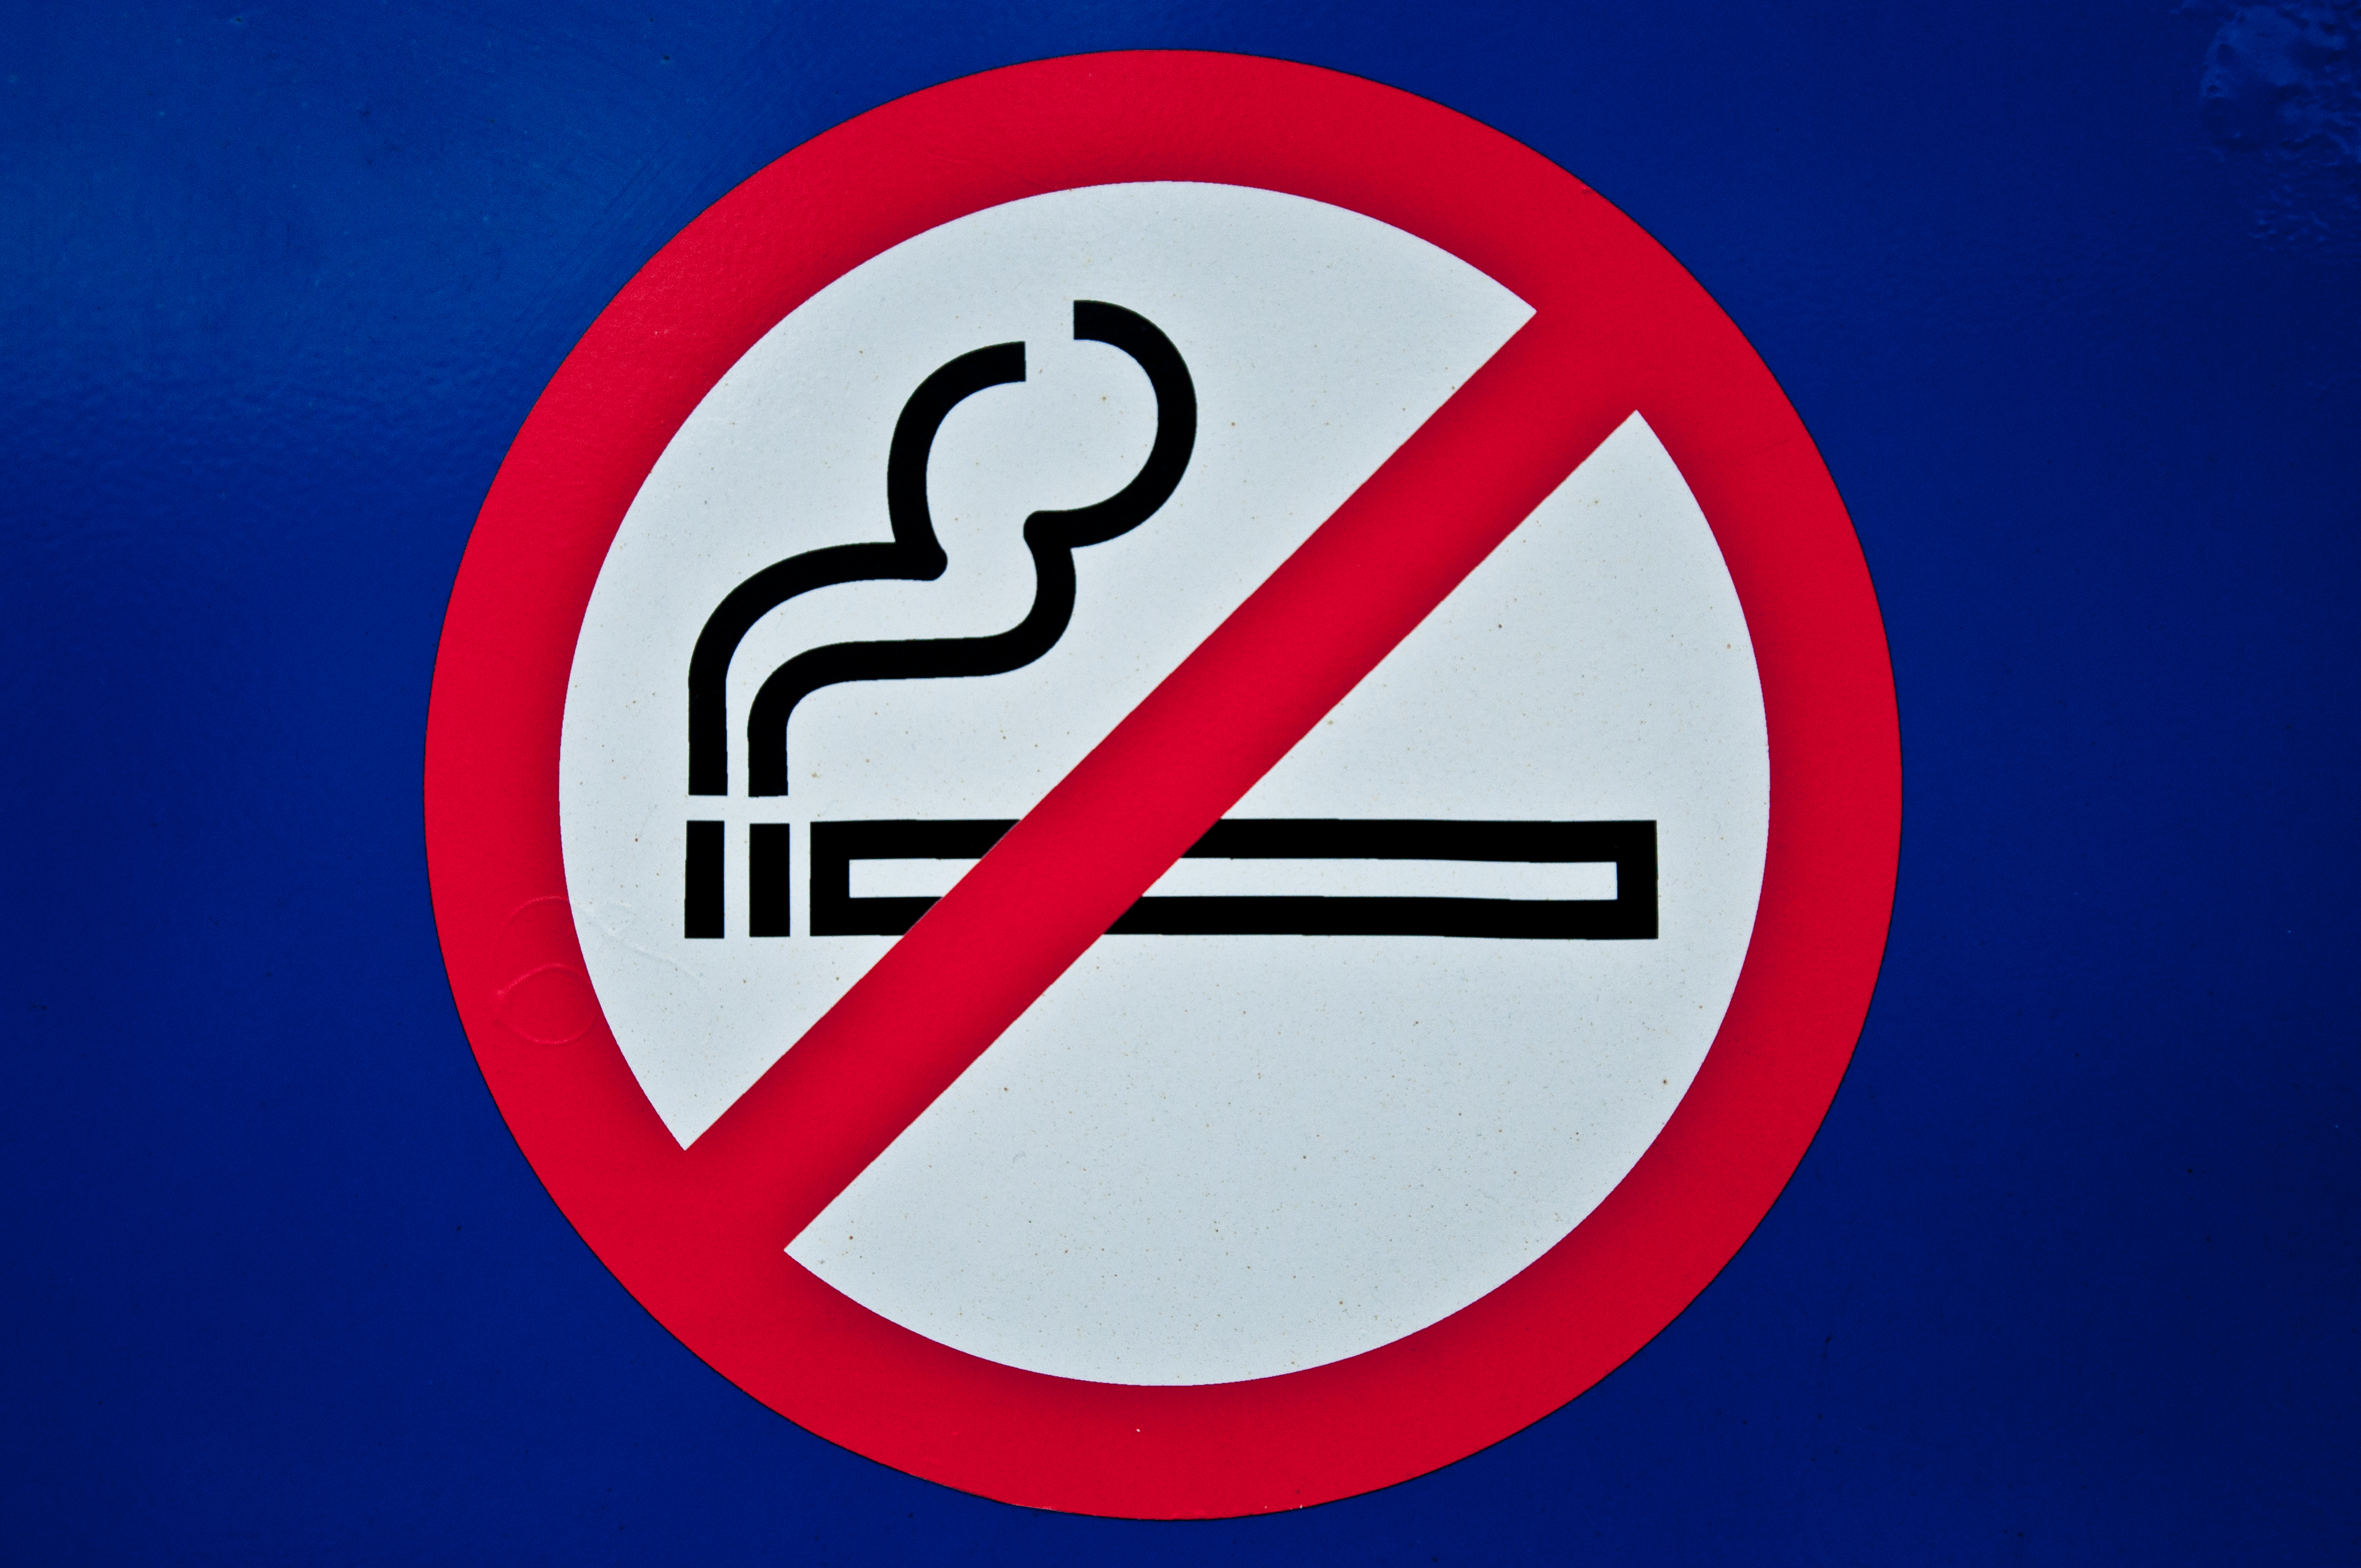 No smoking sign photo